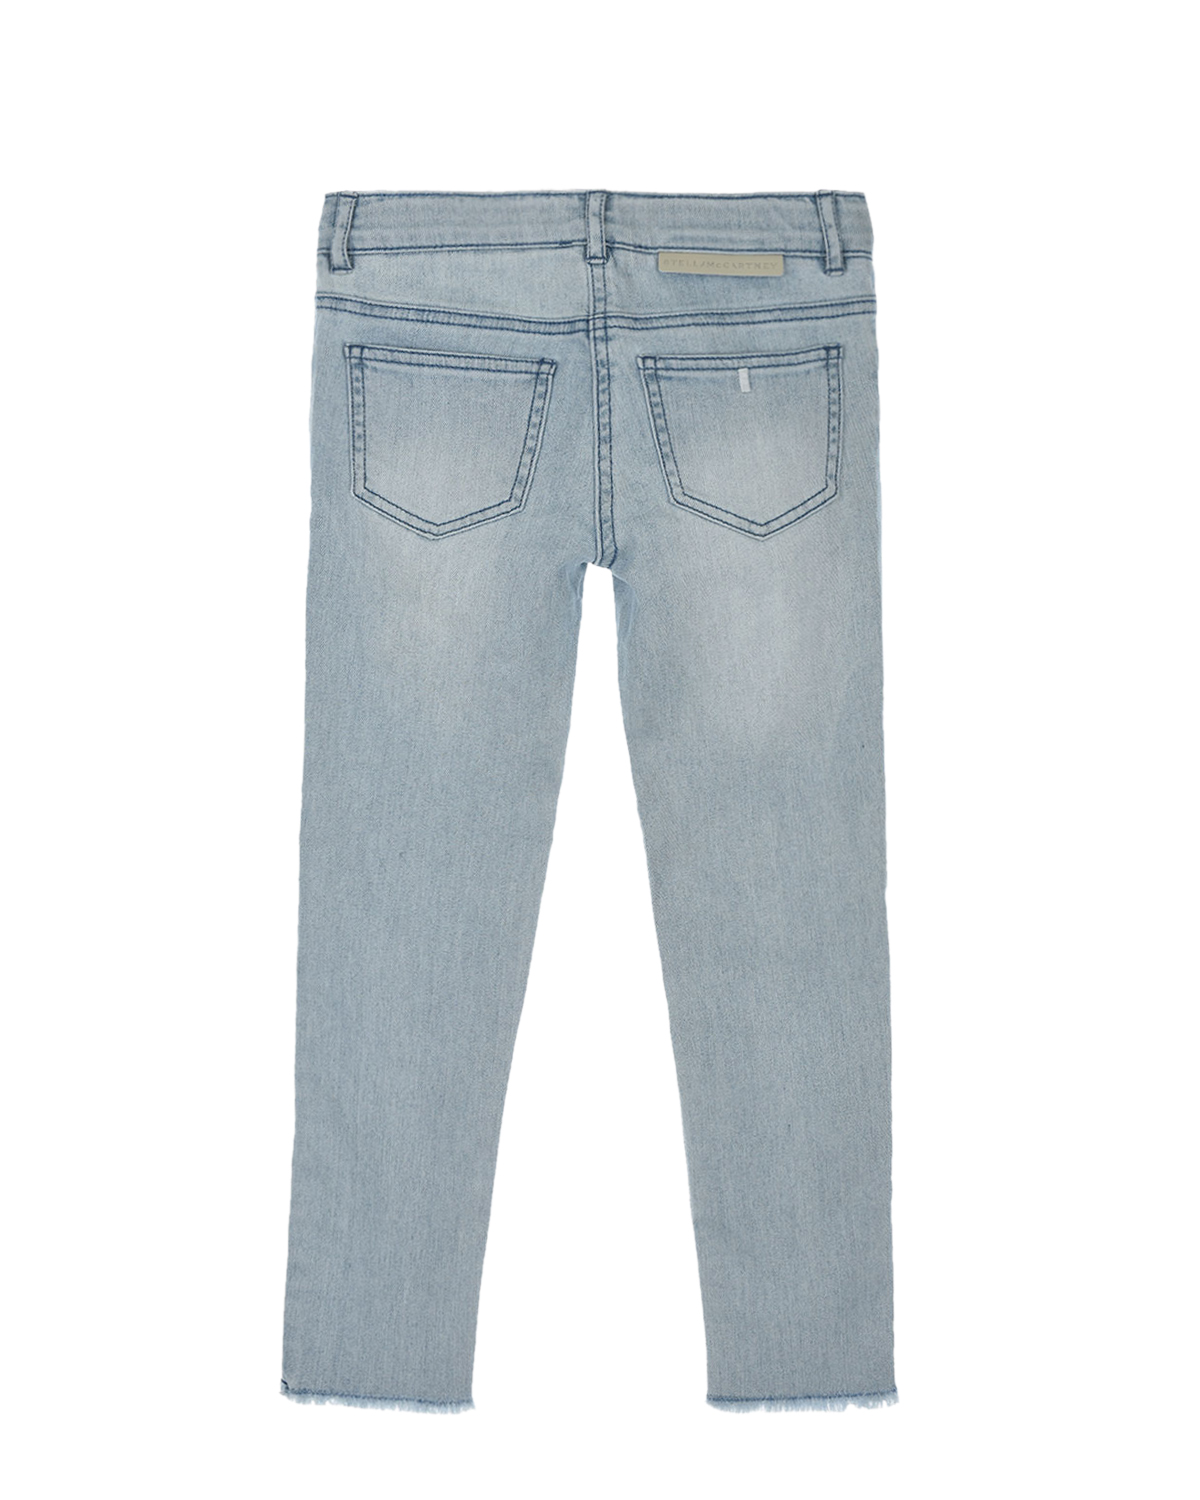 Базовые джинсы с отделкой бахромой Stella McCartney детские, размер 104, цвет голубой - фото 2